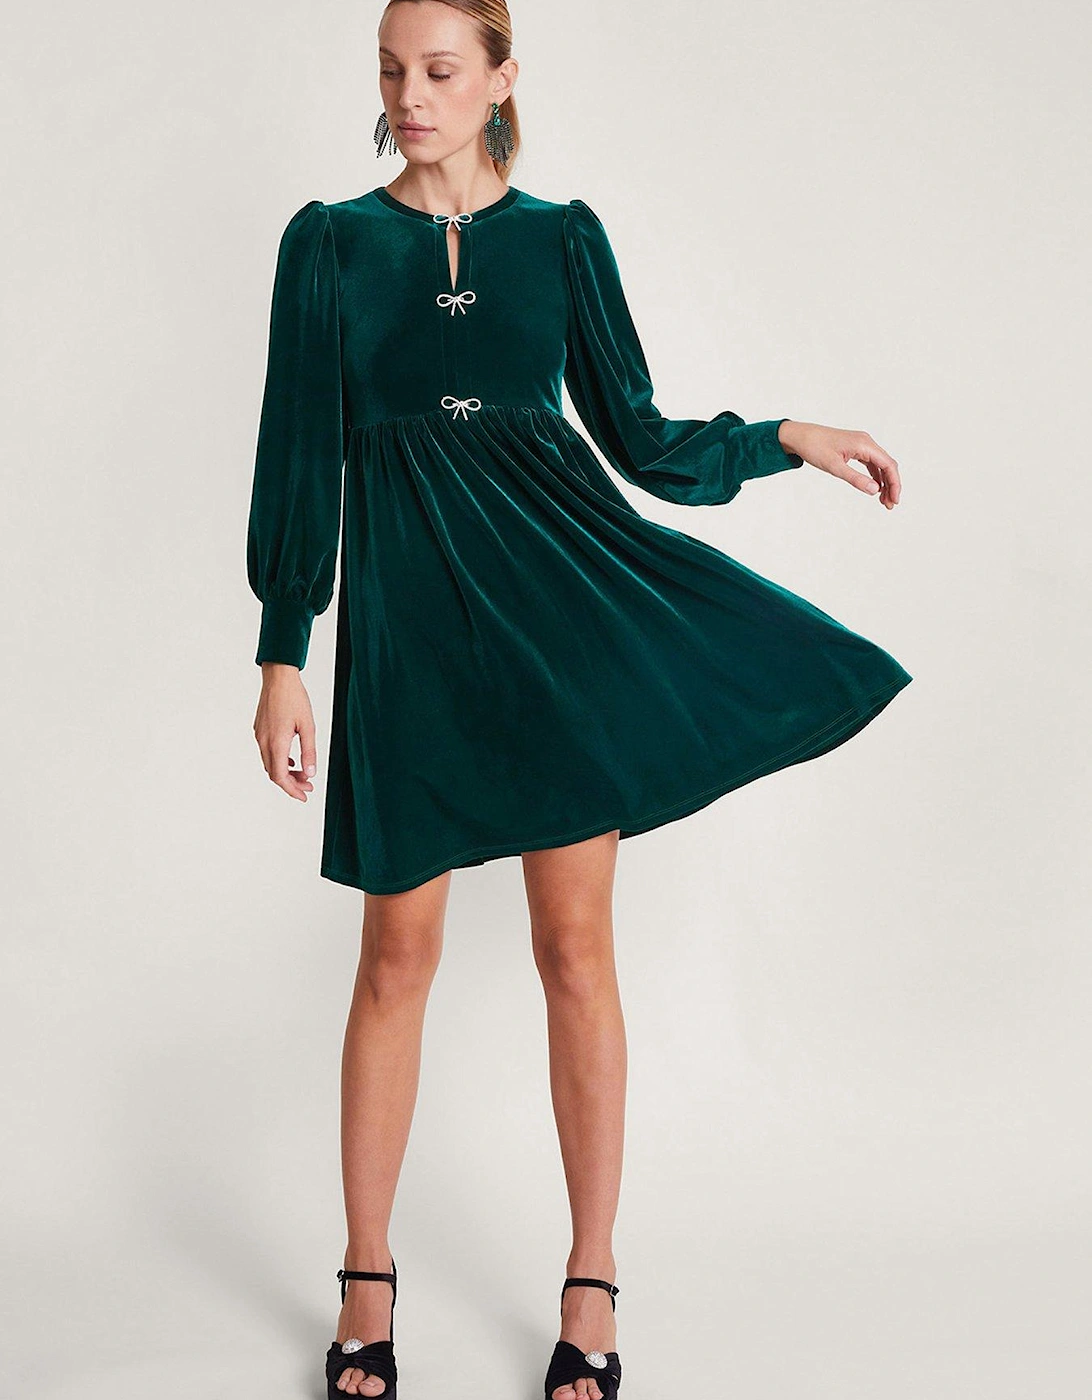 Evie Velvet Bow Dress - Green, 2 of 1